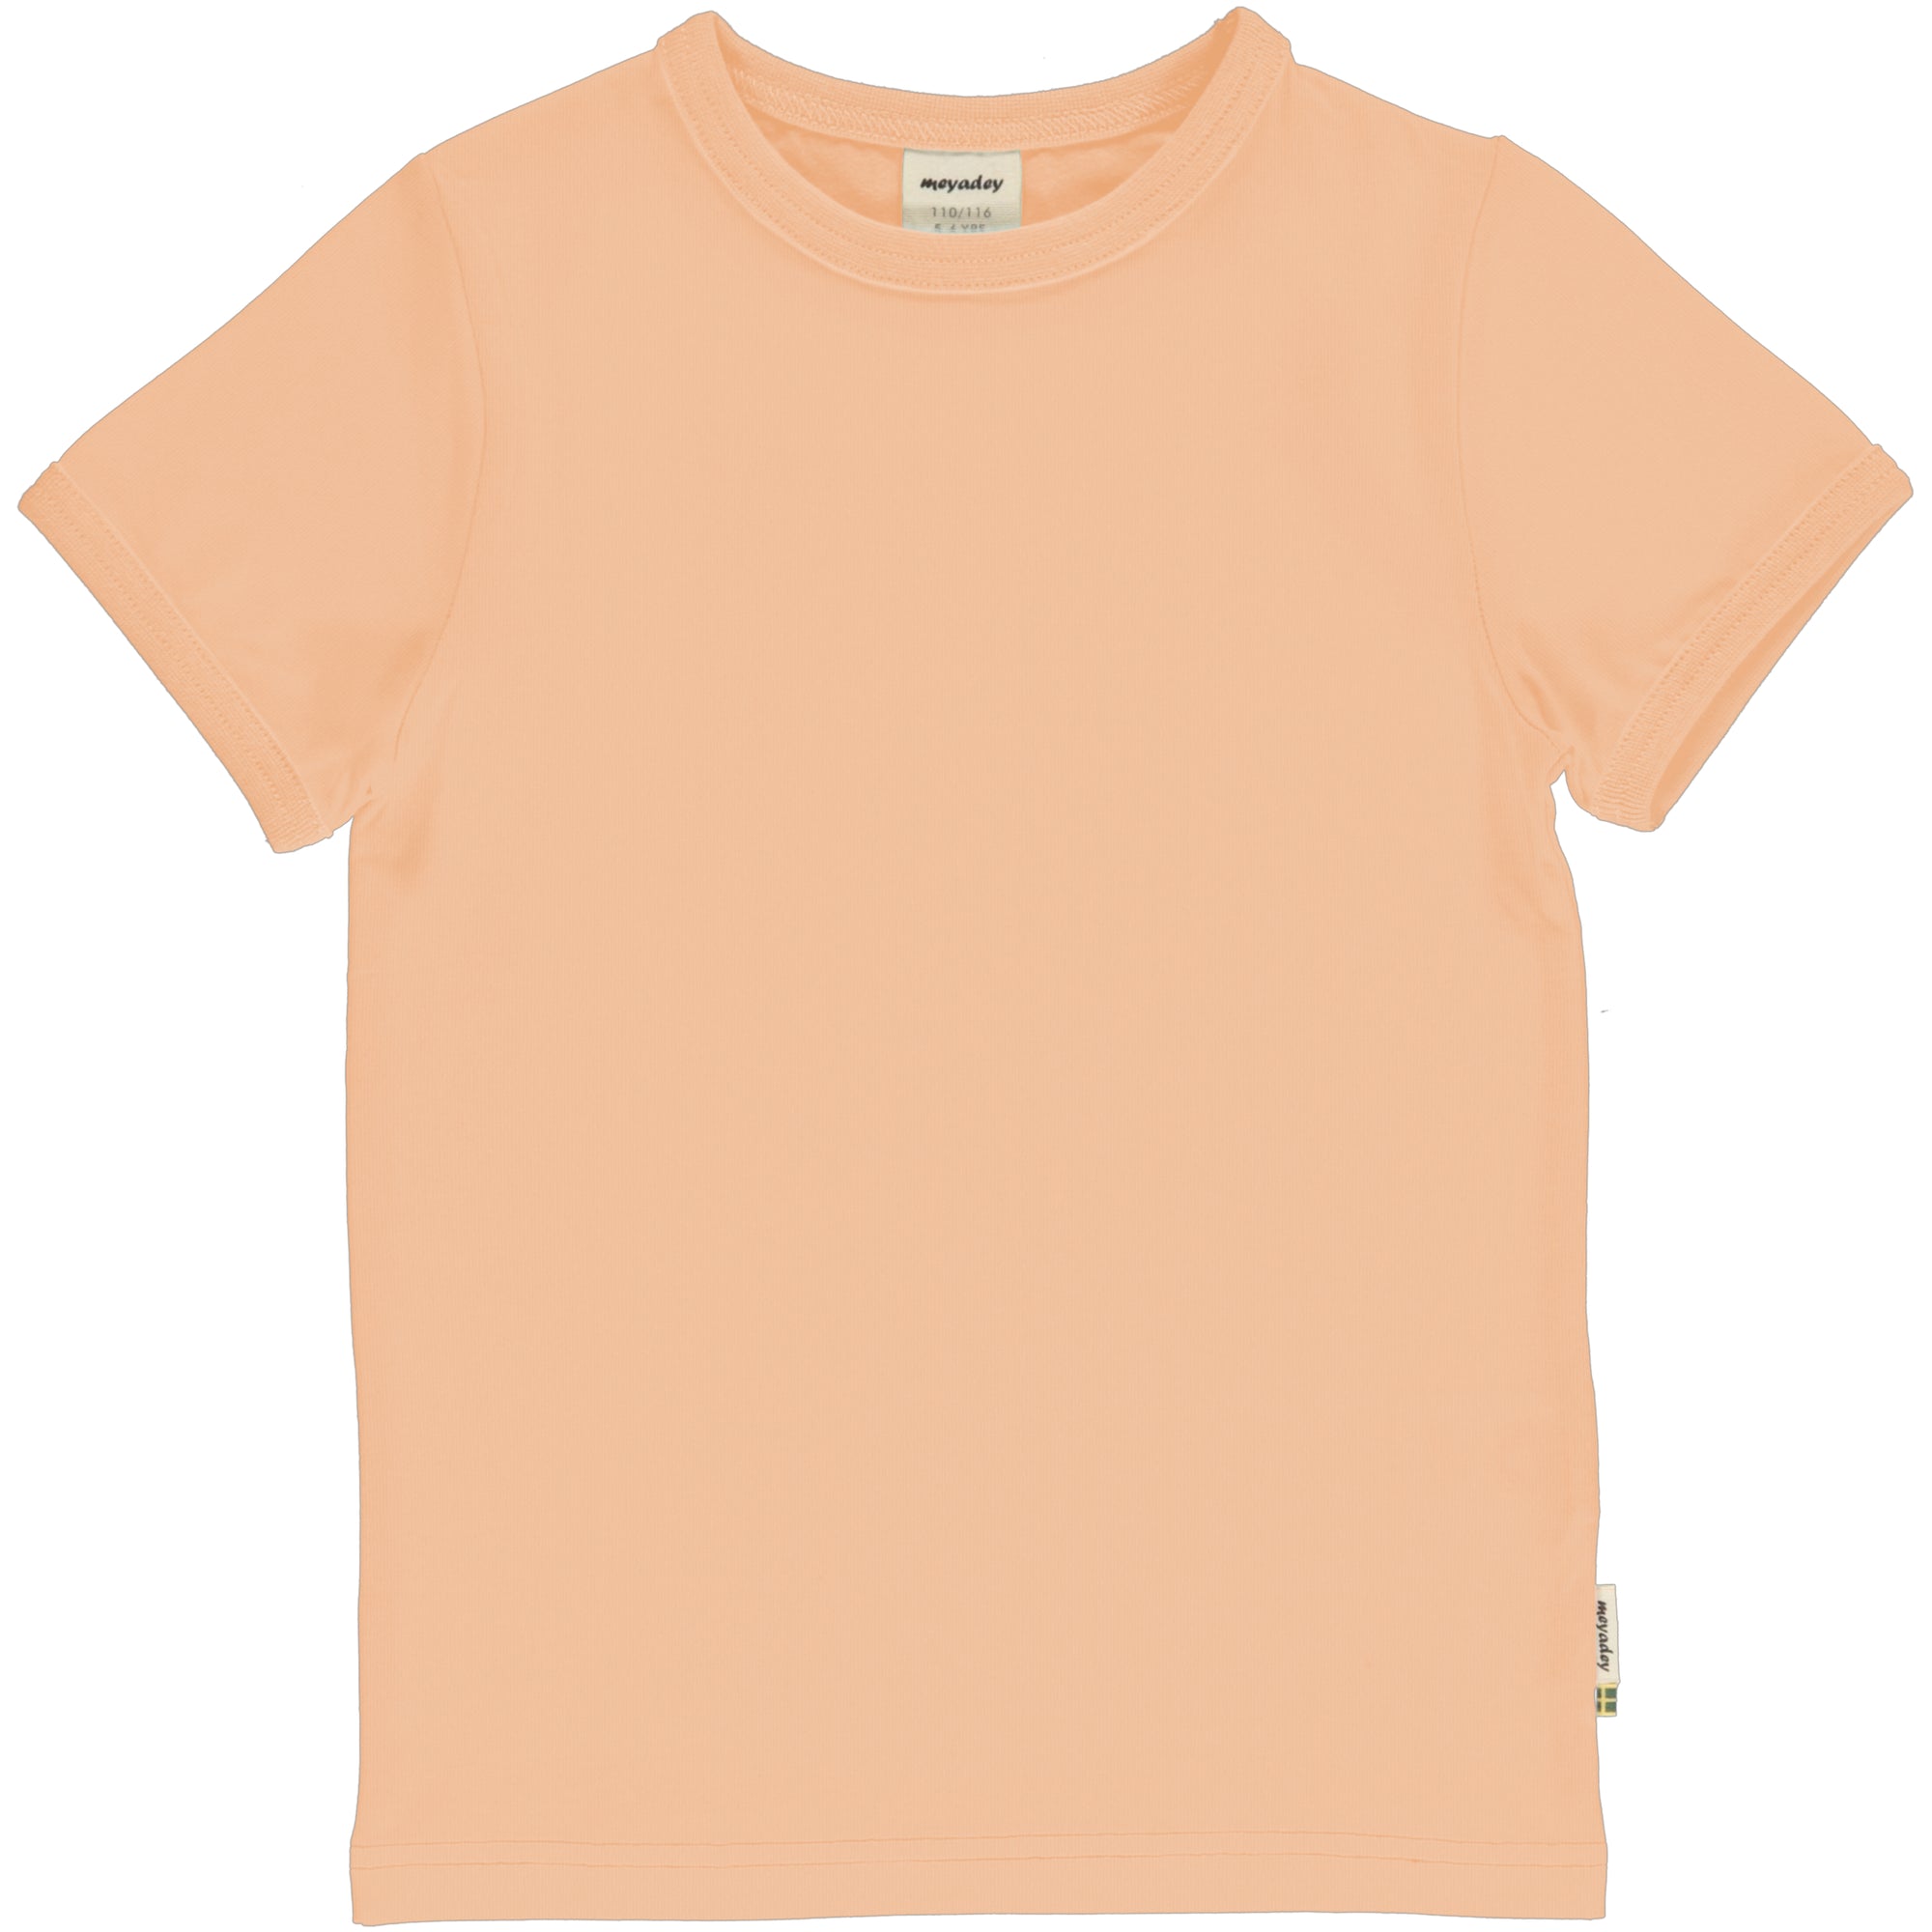 Dij Het begin Bridge pier Meyadey - Top SS Solid Orange Soft T-Shirt Zacht Oranje - GOEDvanToen -  Eerlijke & biologische kinderkleding en babykleding